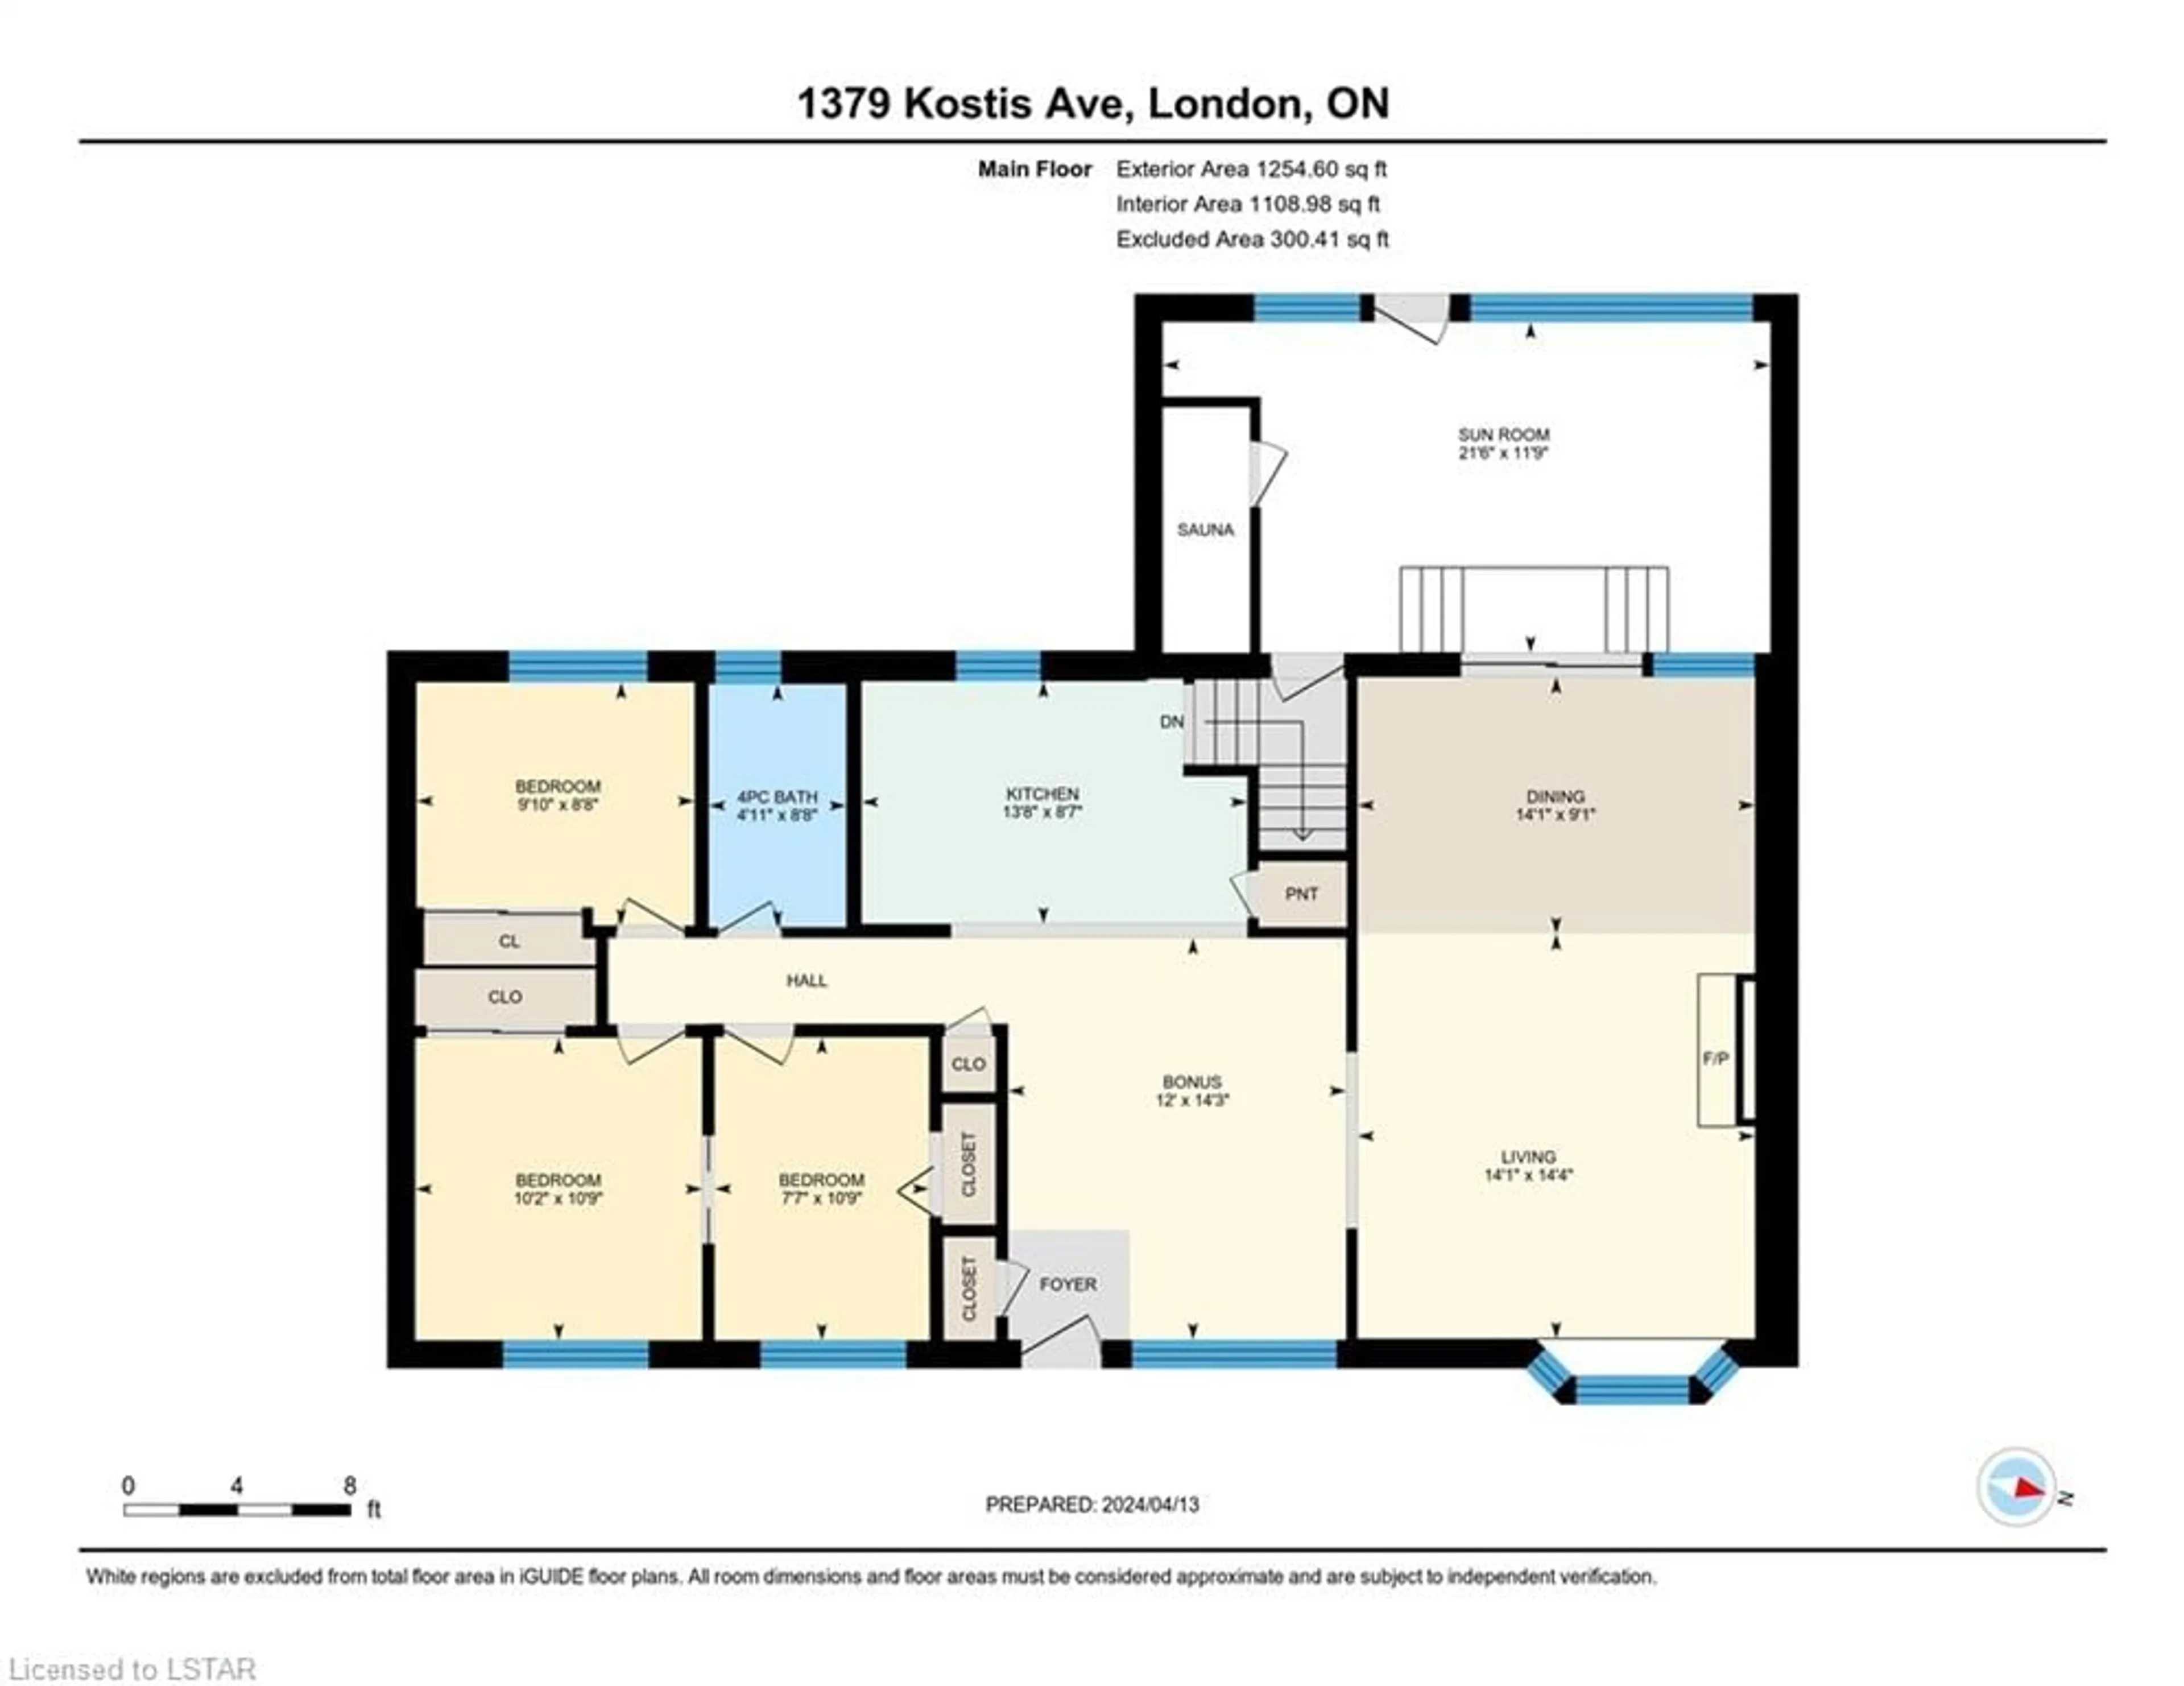 Floor plan for 1379 Kostis Ave, London Ontario N5V 3E3